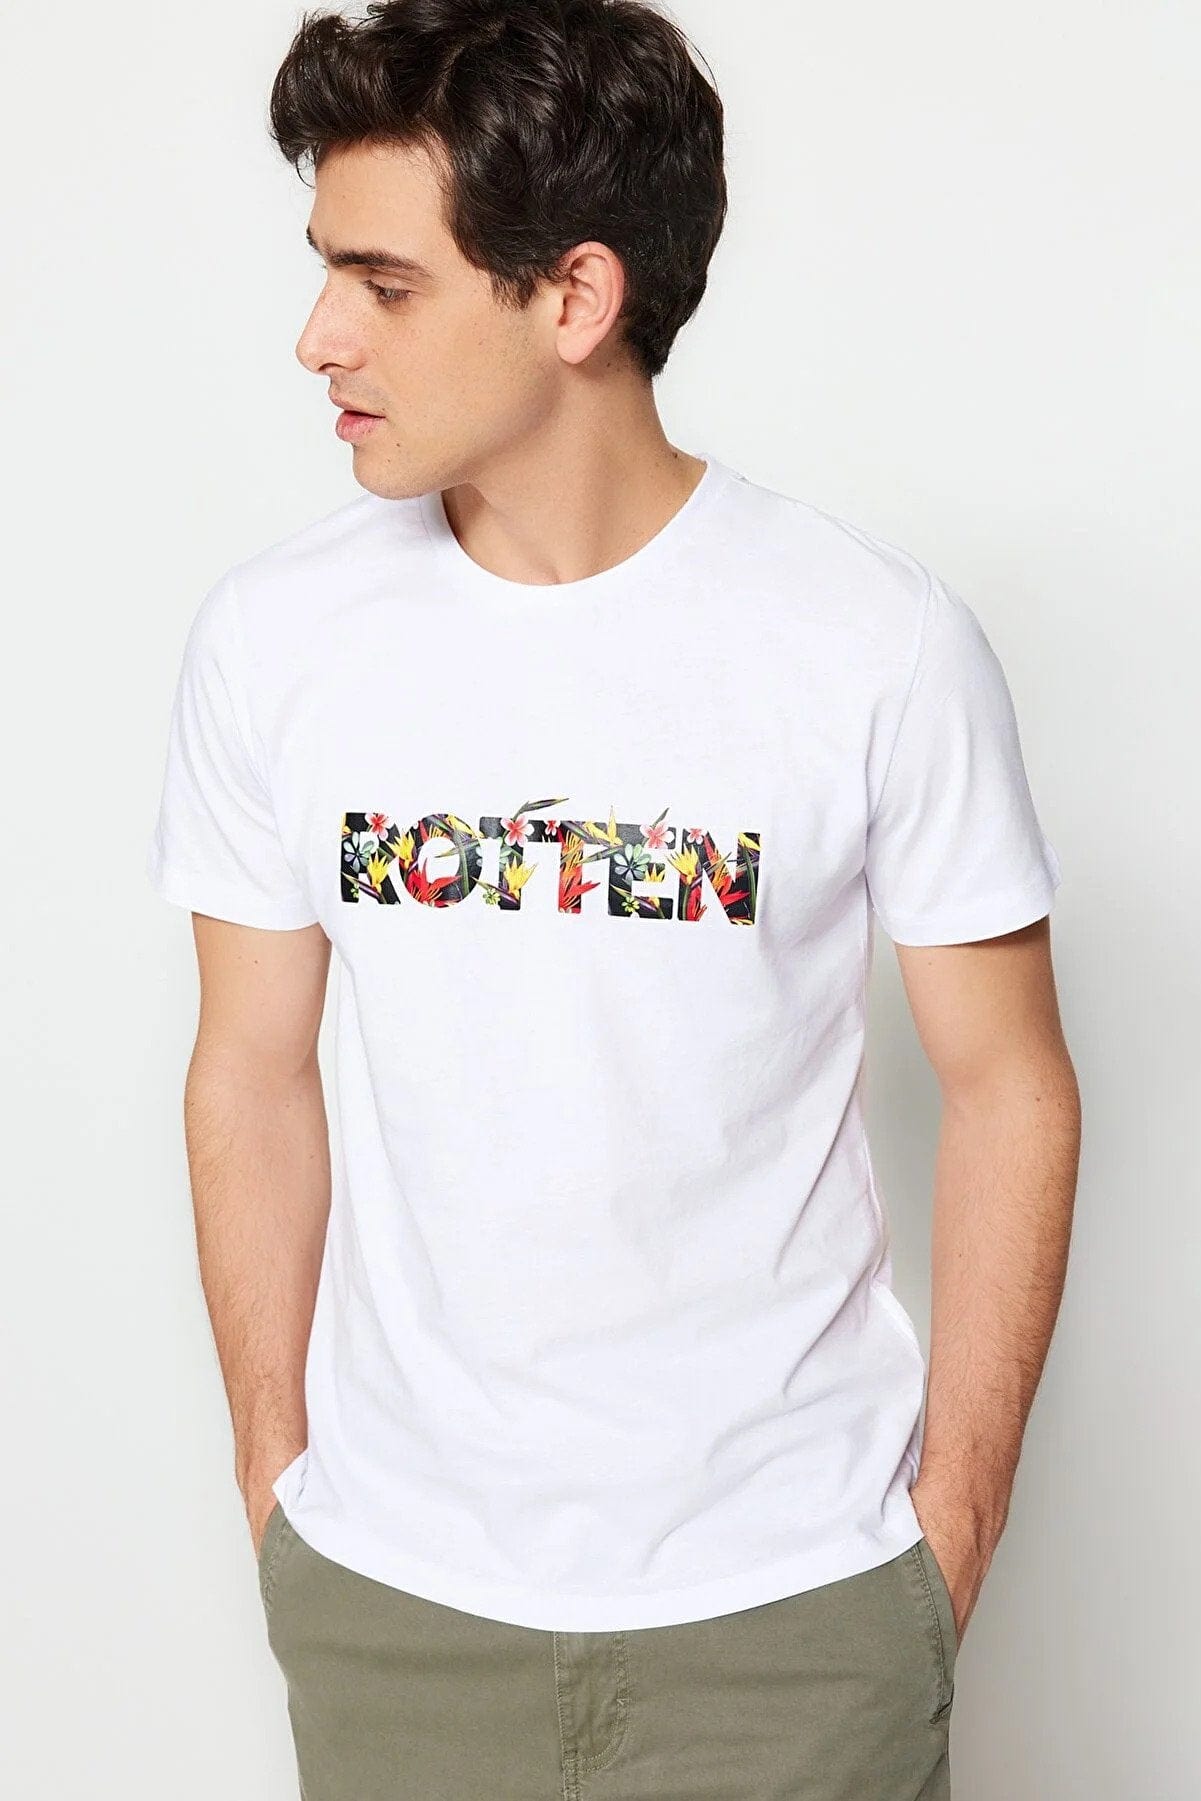 Rotten Flowered Designed Trendyol T-shirt